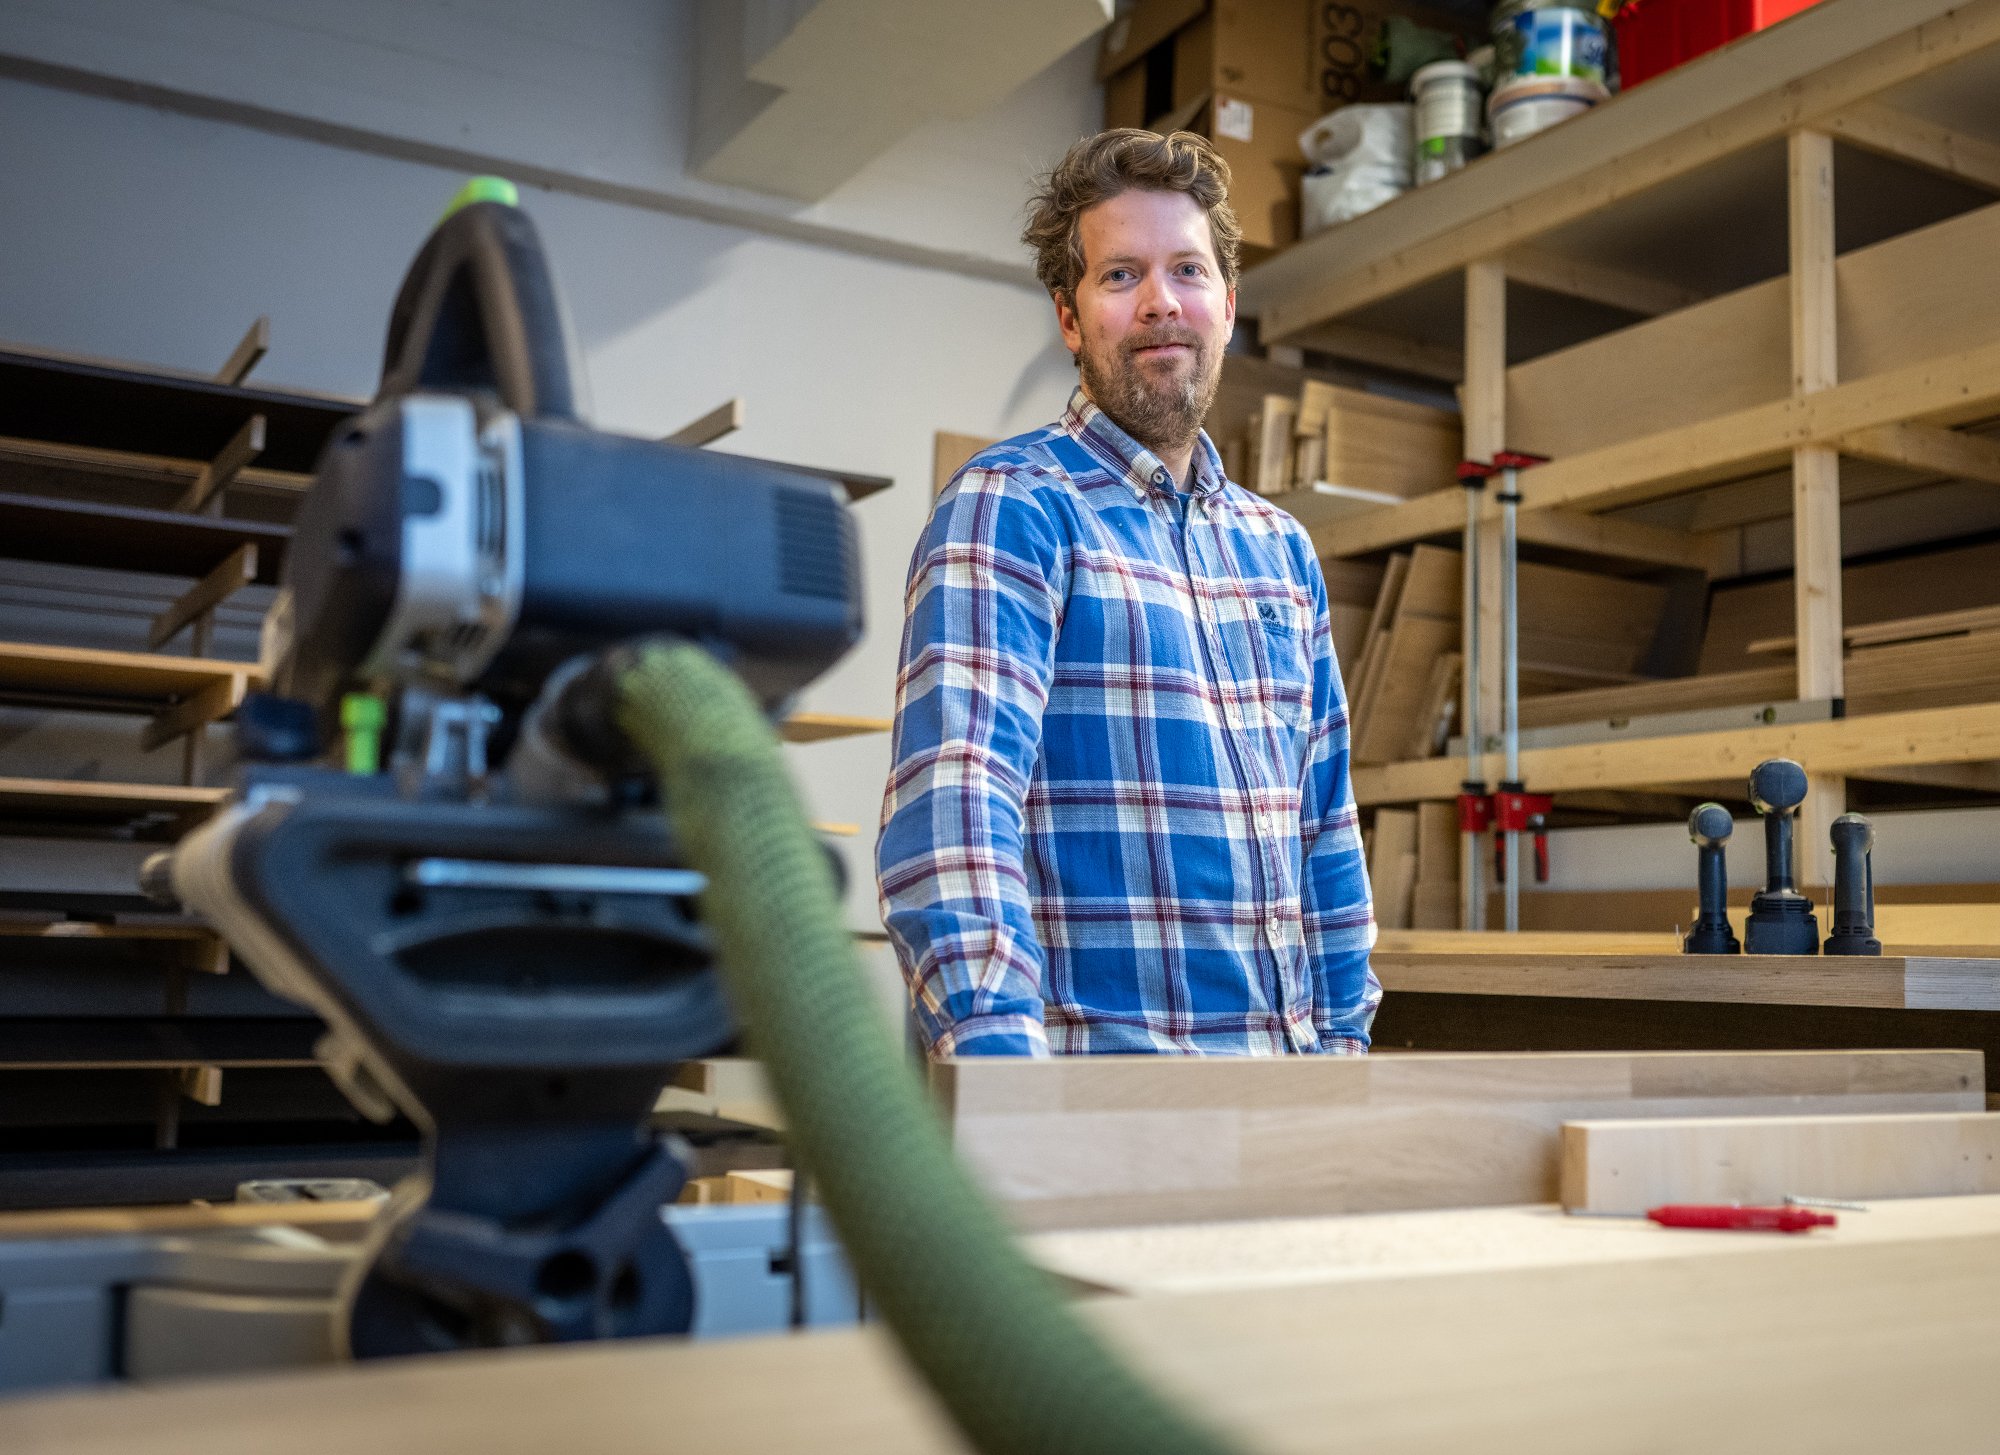 VERKTØY: Møbelsnekker Jeppe Knudsen trenger ikke store maskiner for å produsere kjøkken og garderober. Han trenger bare en kapp og gjæresag og andre mindre verktøy til produksjonen. Foto: Rune Folkedal